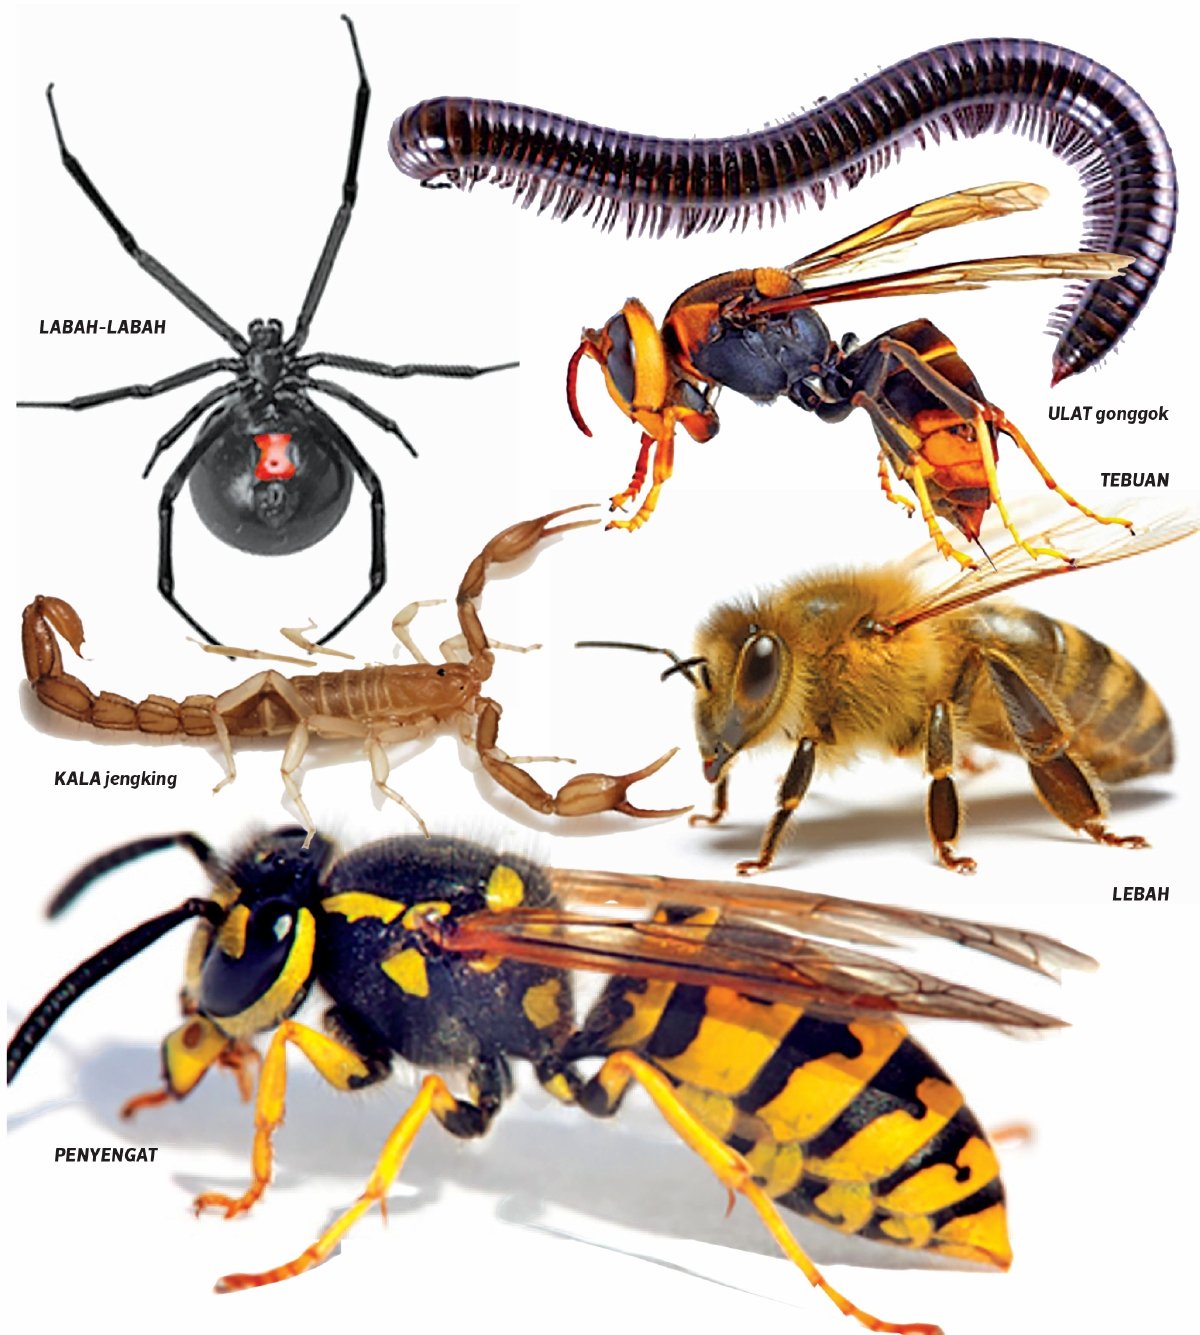 ORANG ramai perlu menyedari bahaya serta kesan gigitan pelbagai jenis serangga berbisa yang wujud di sekeliling.